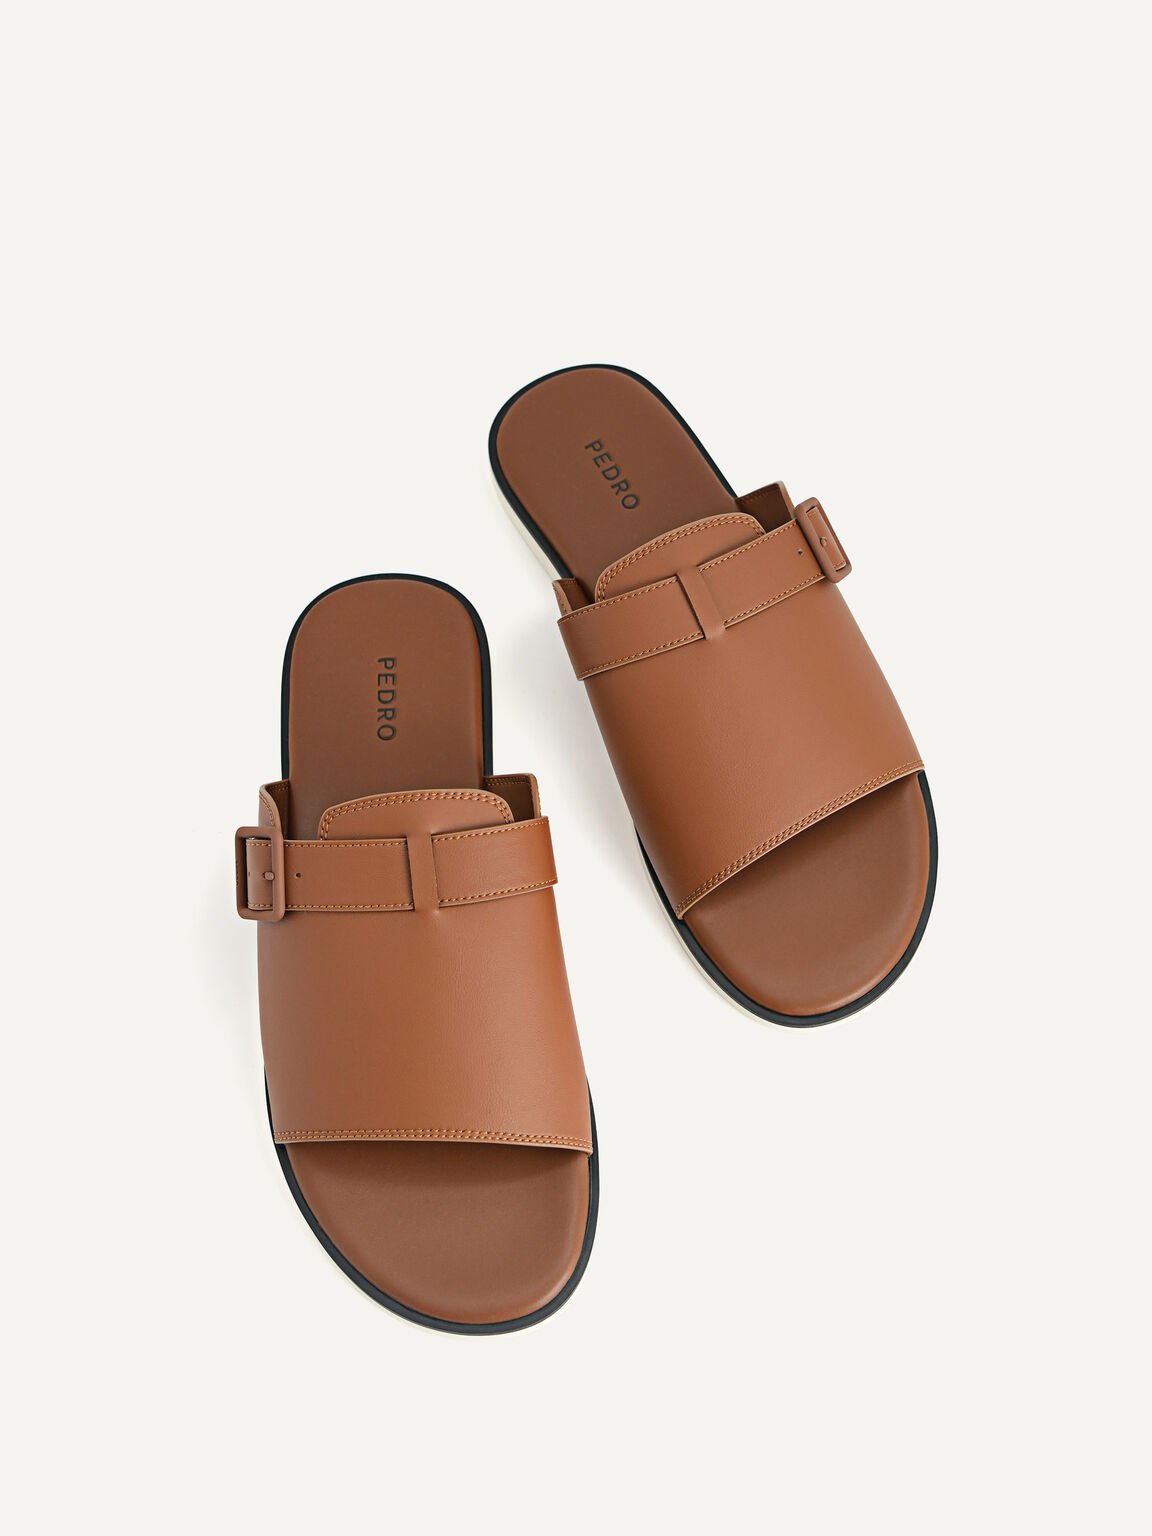 Monochrome Slide Sandals, Brown